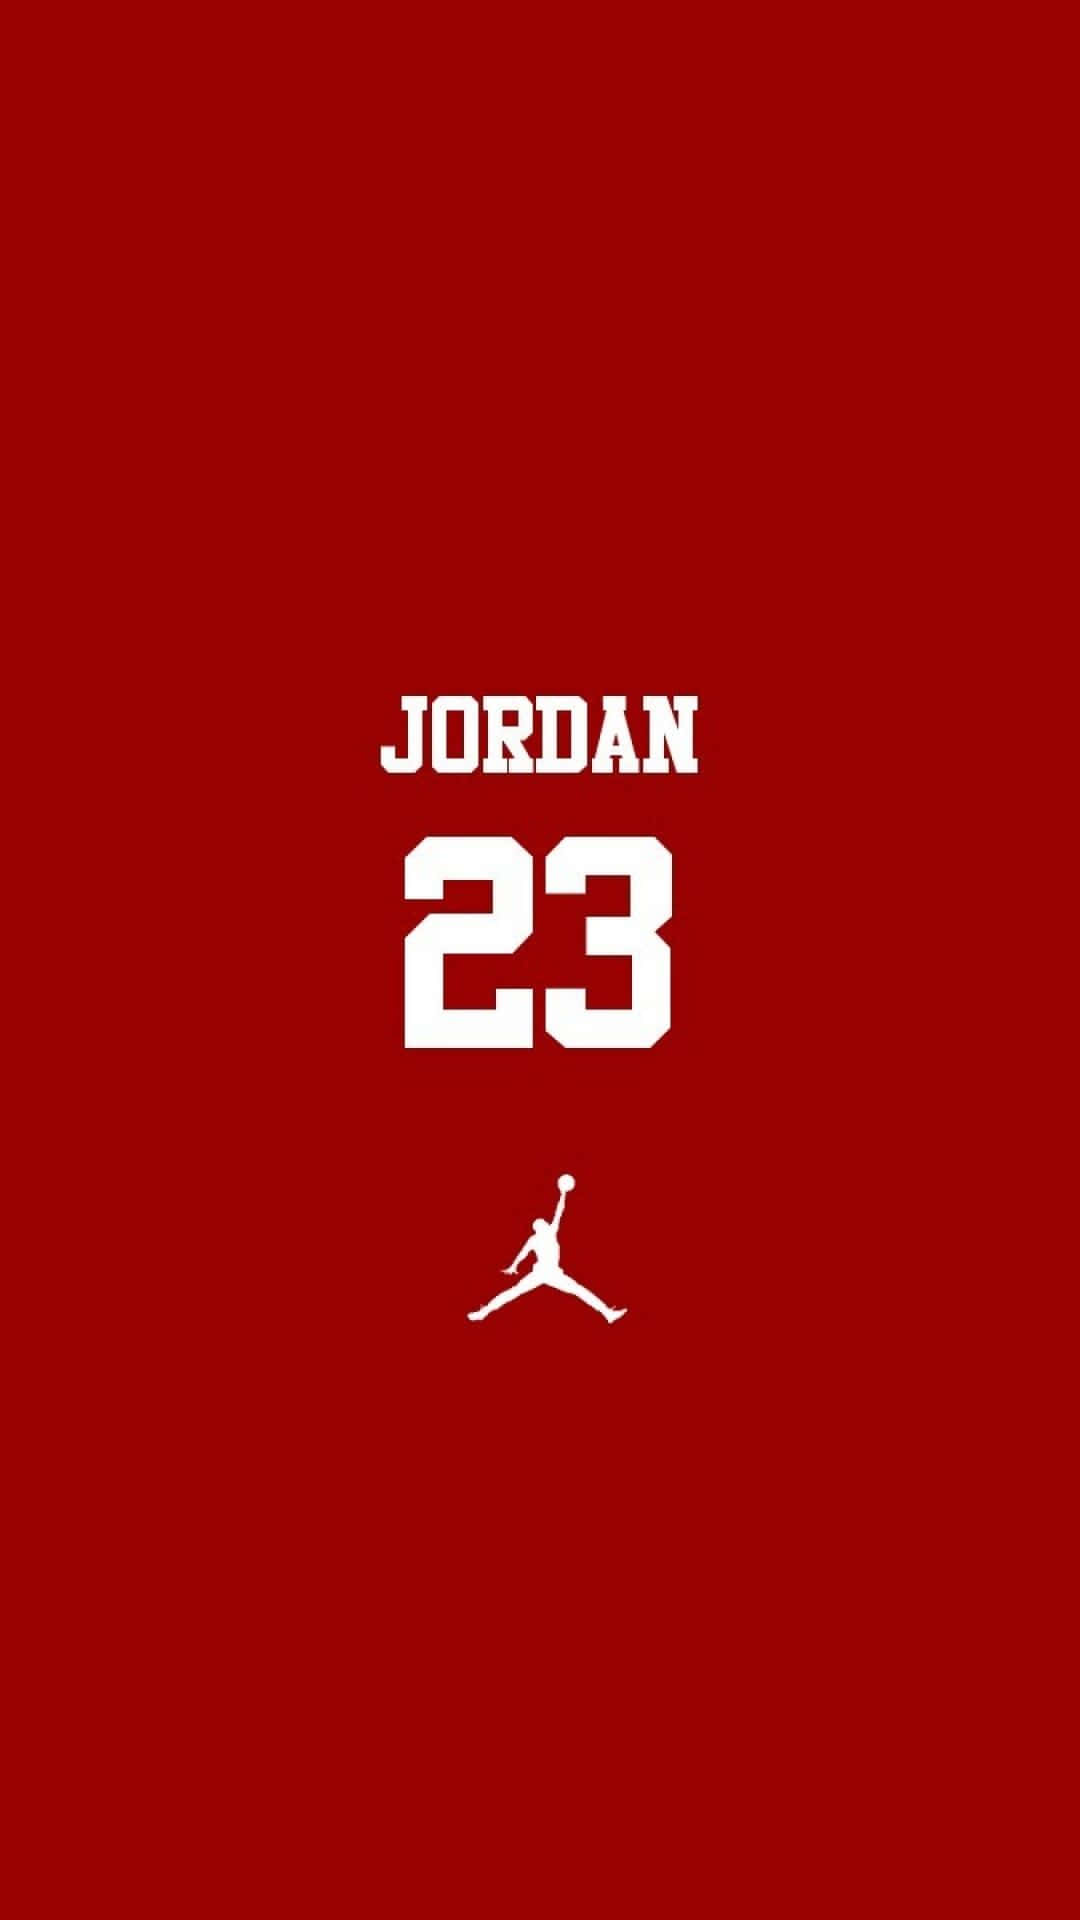 Imagende Logo De Jordan Para Teléfono Fondo de pantalla